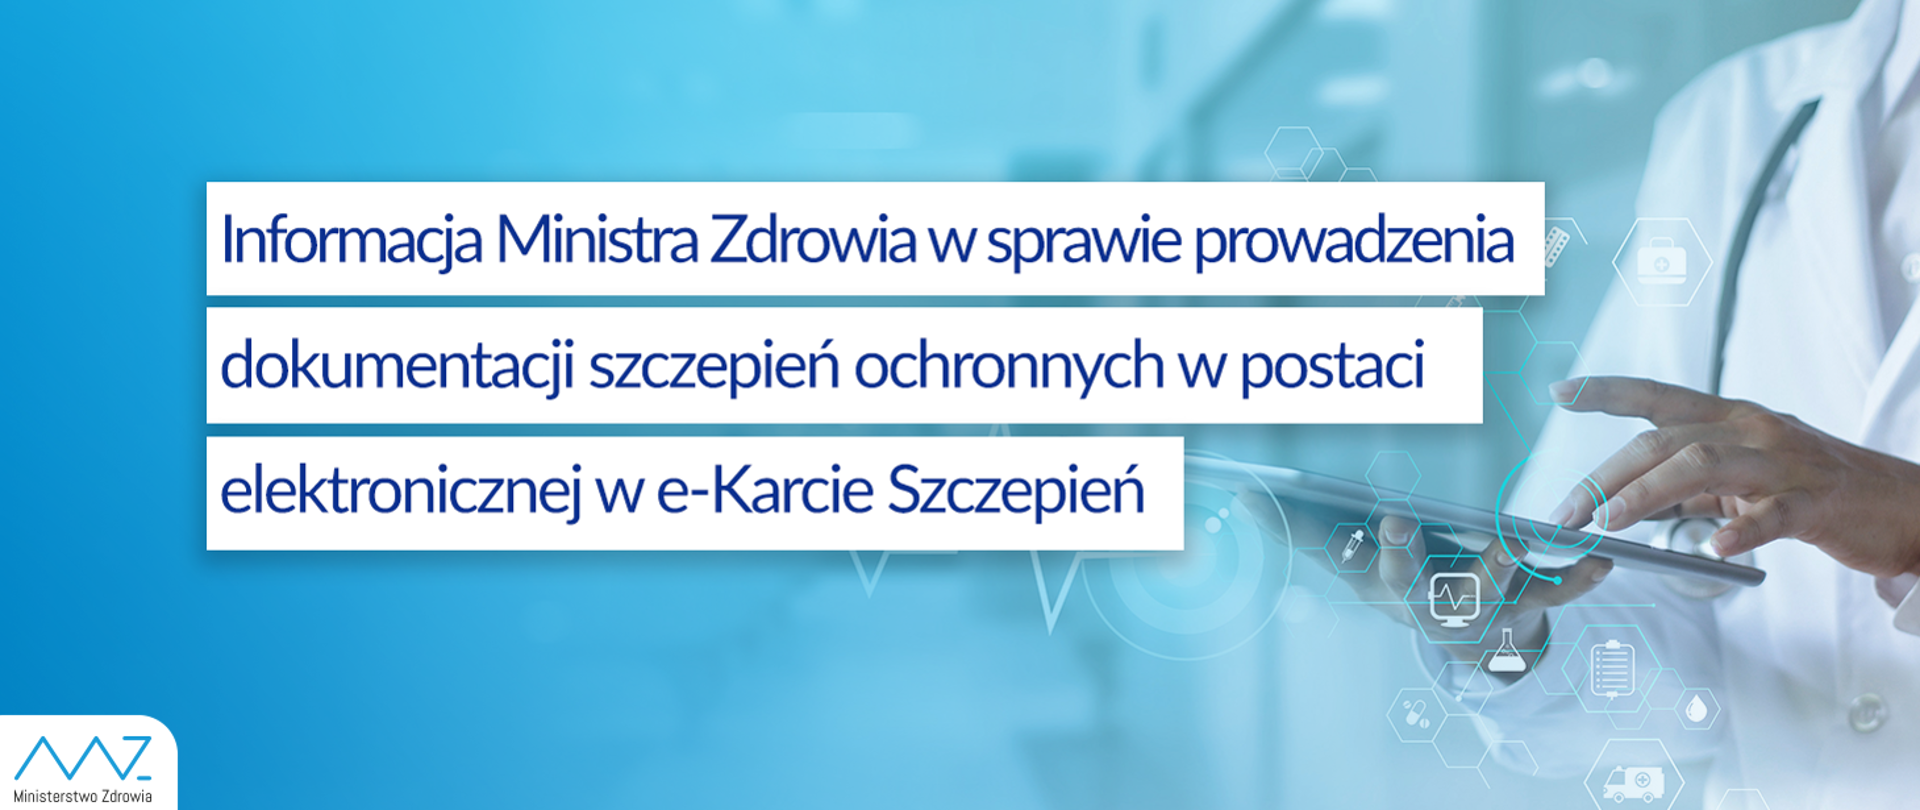 Informacja Ministra Zdrowia w sprawie prowadzenia dokumentacji szczepień ochronnych w postaci elektronicznej w e_Karcie Szczepień